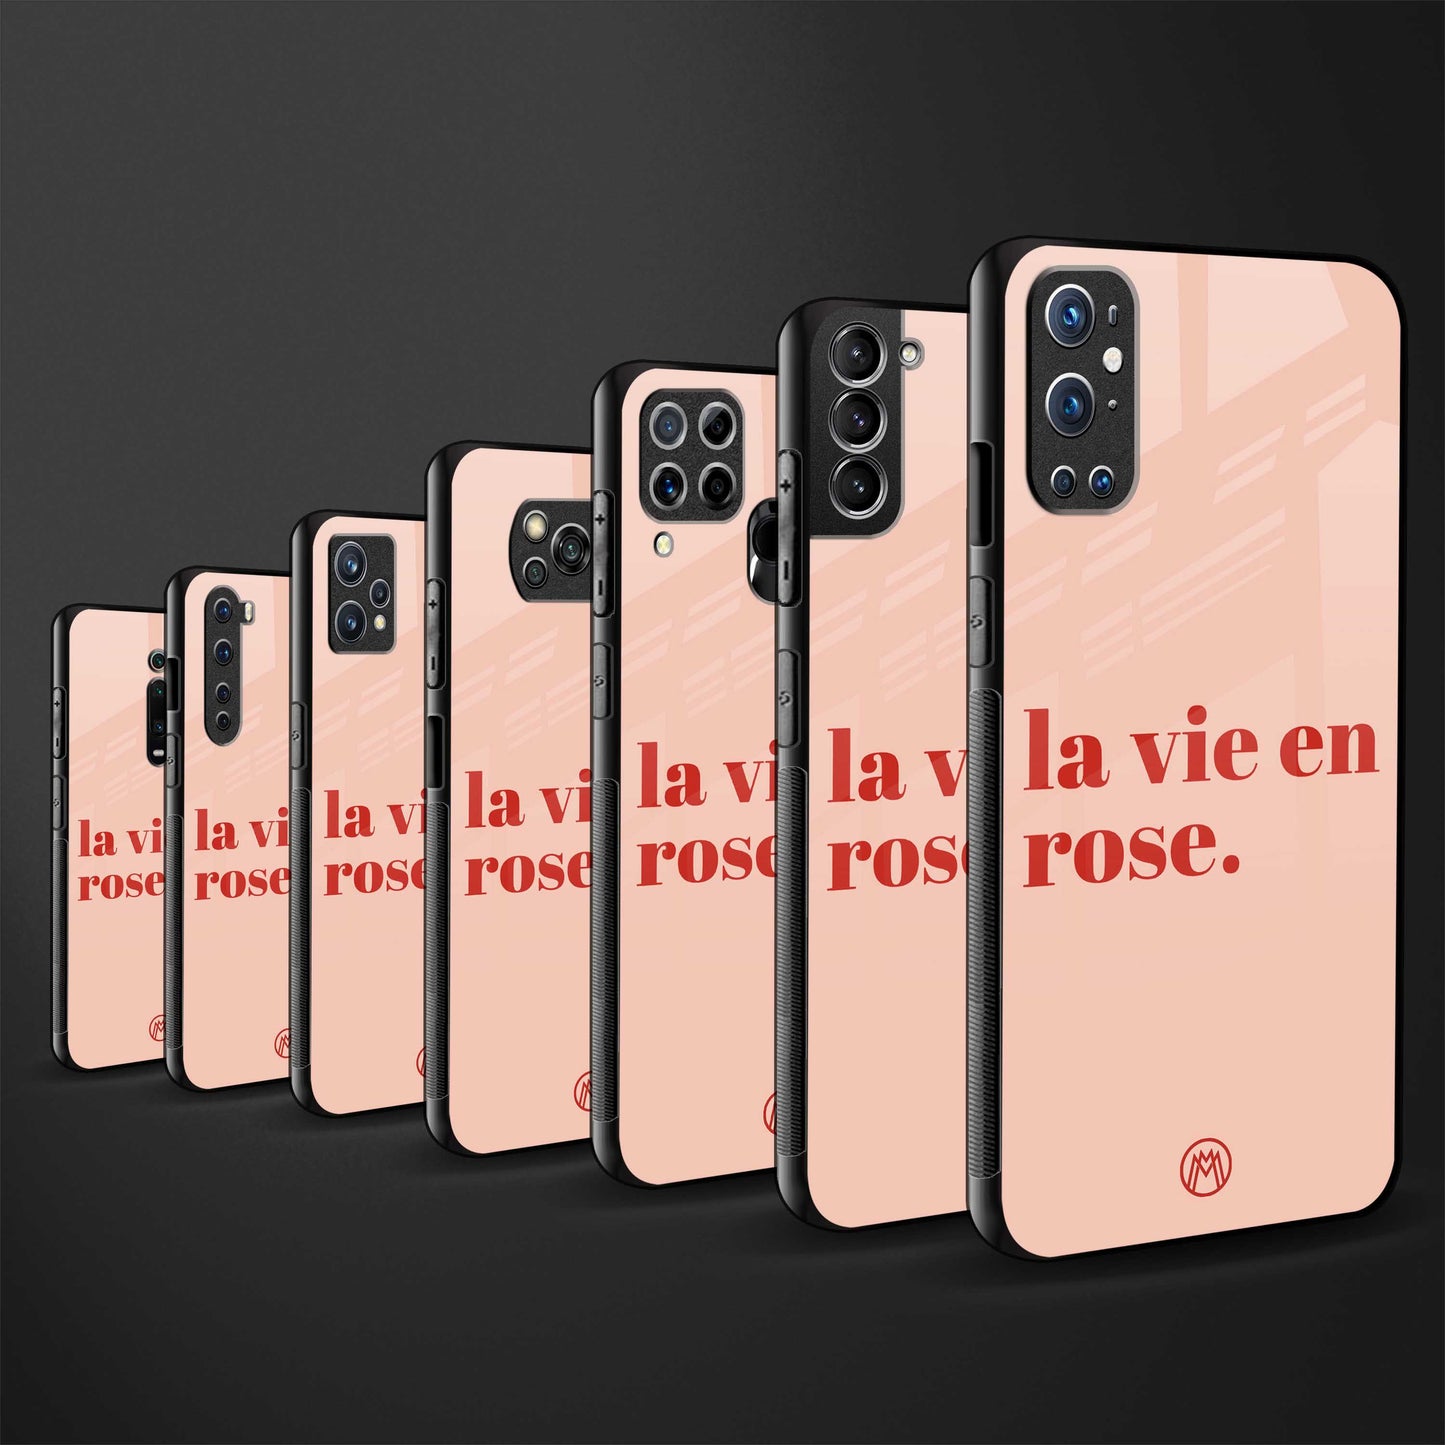 la vie en rose quote glass case for iphone 8 image-3